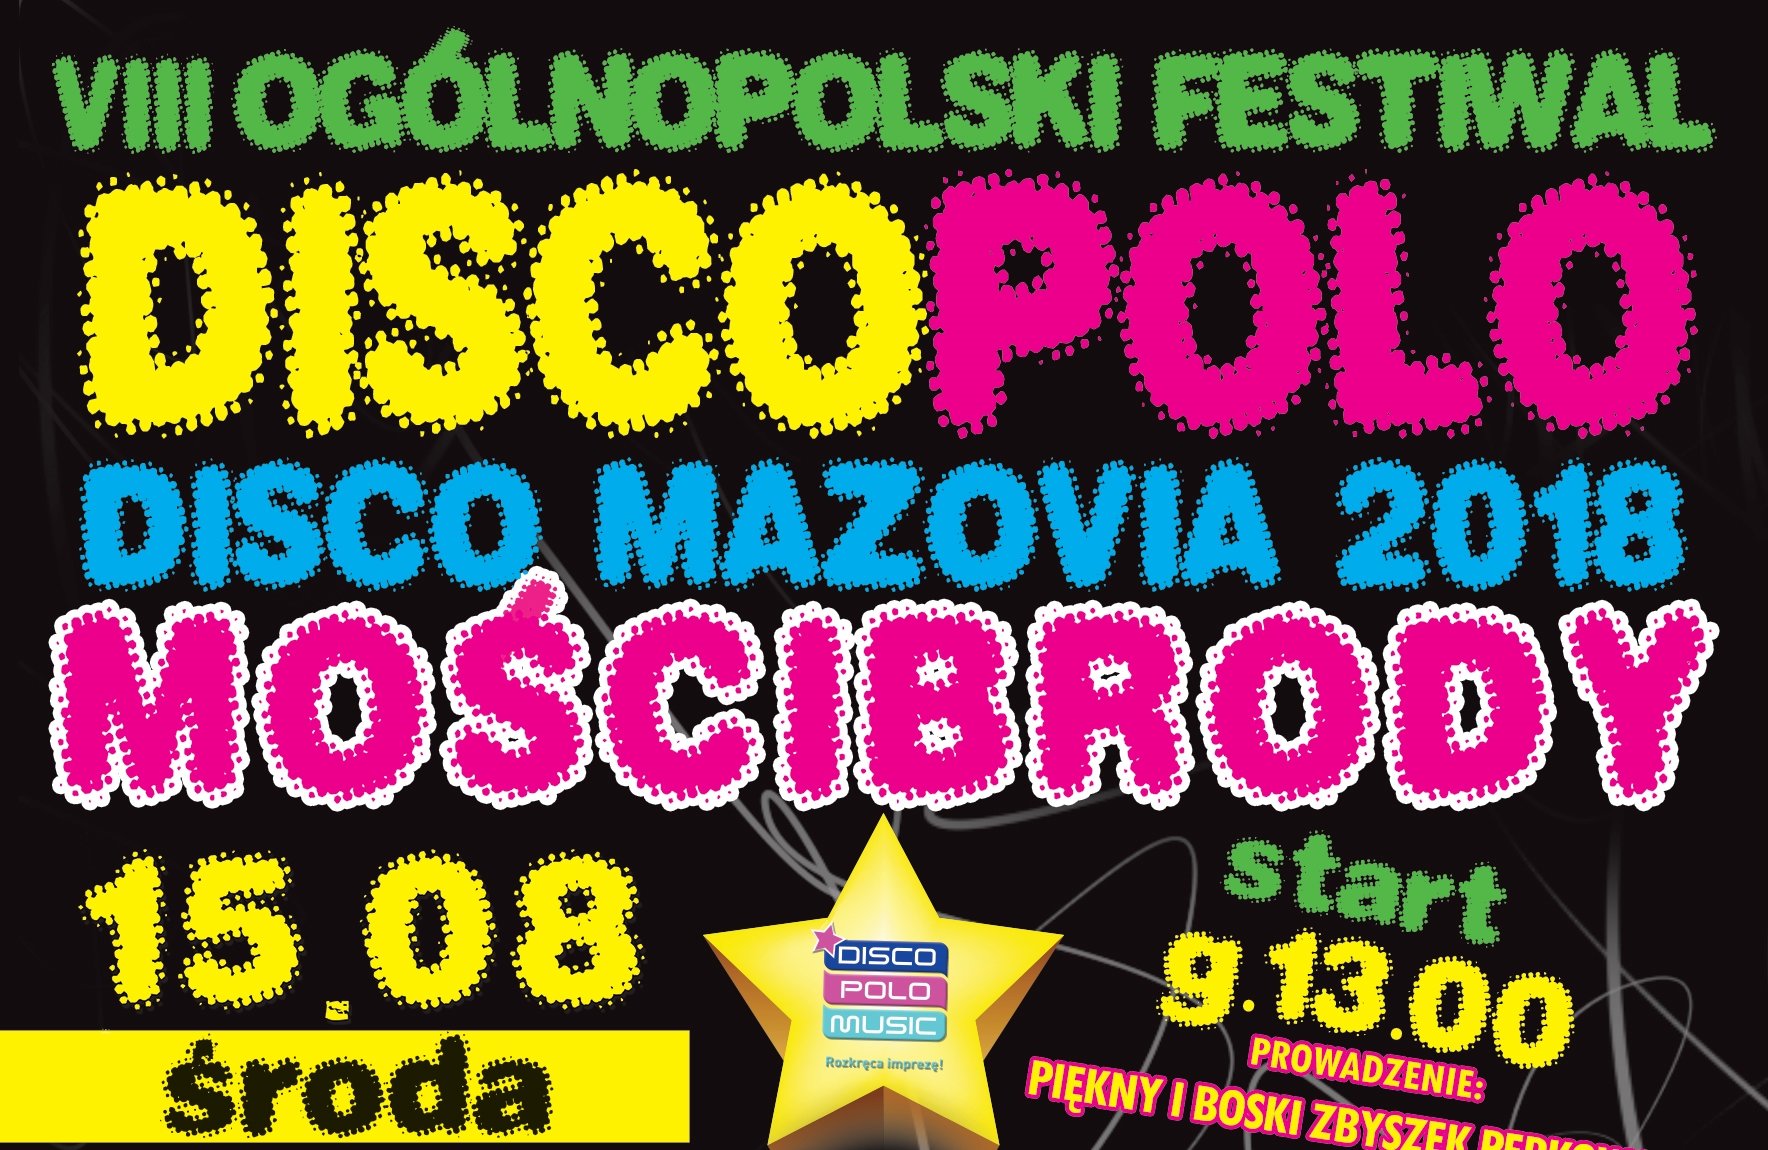 Disco Mazovia 2018! Mościbrody stolicą disco polo!